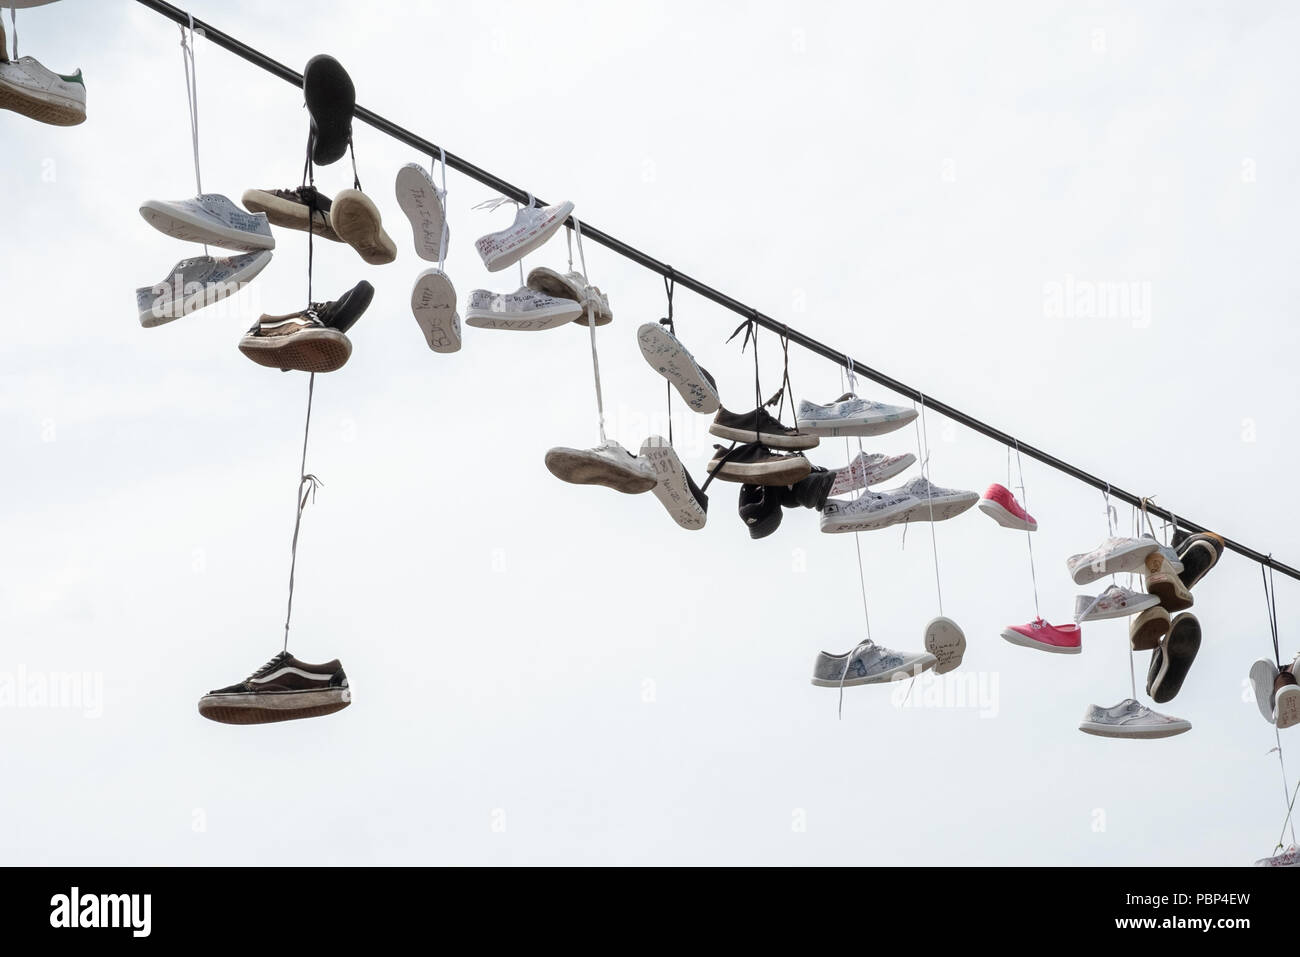 Linie der Paare Schuhe hängen an einer Leitung neben dem Metronom in Prag  Stockfotografie - Alamy